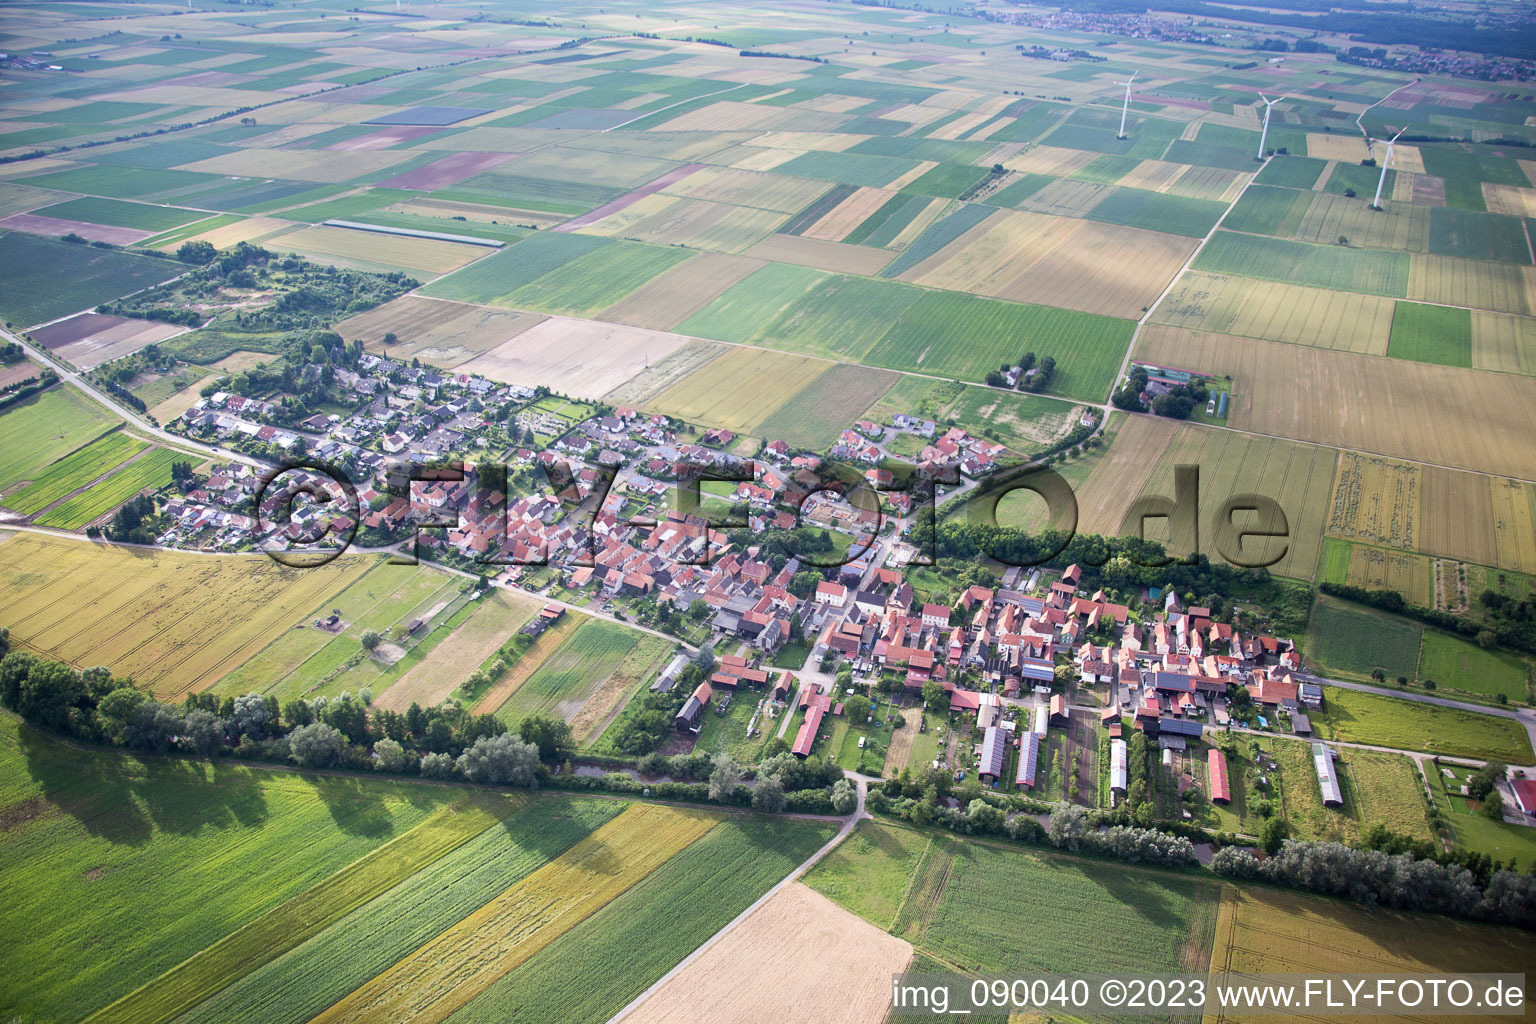 Herxheimweyher in the state Rhineland-Palatinate, Germany from the plane